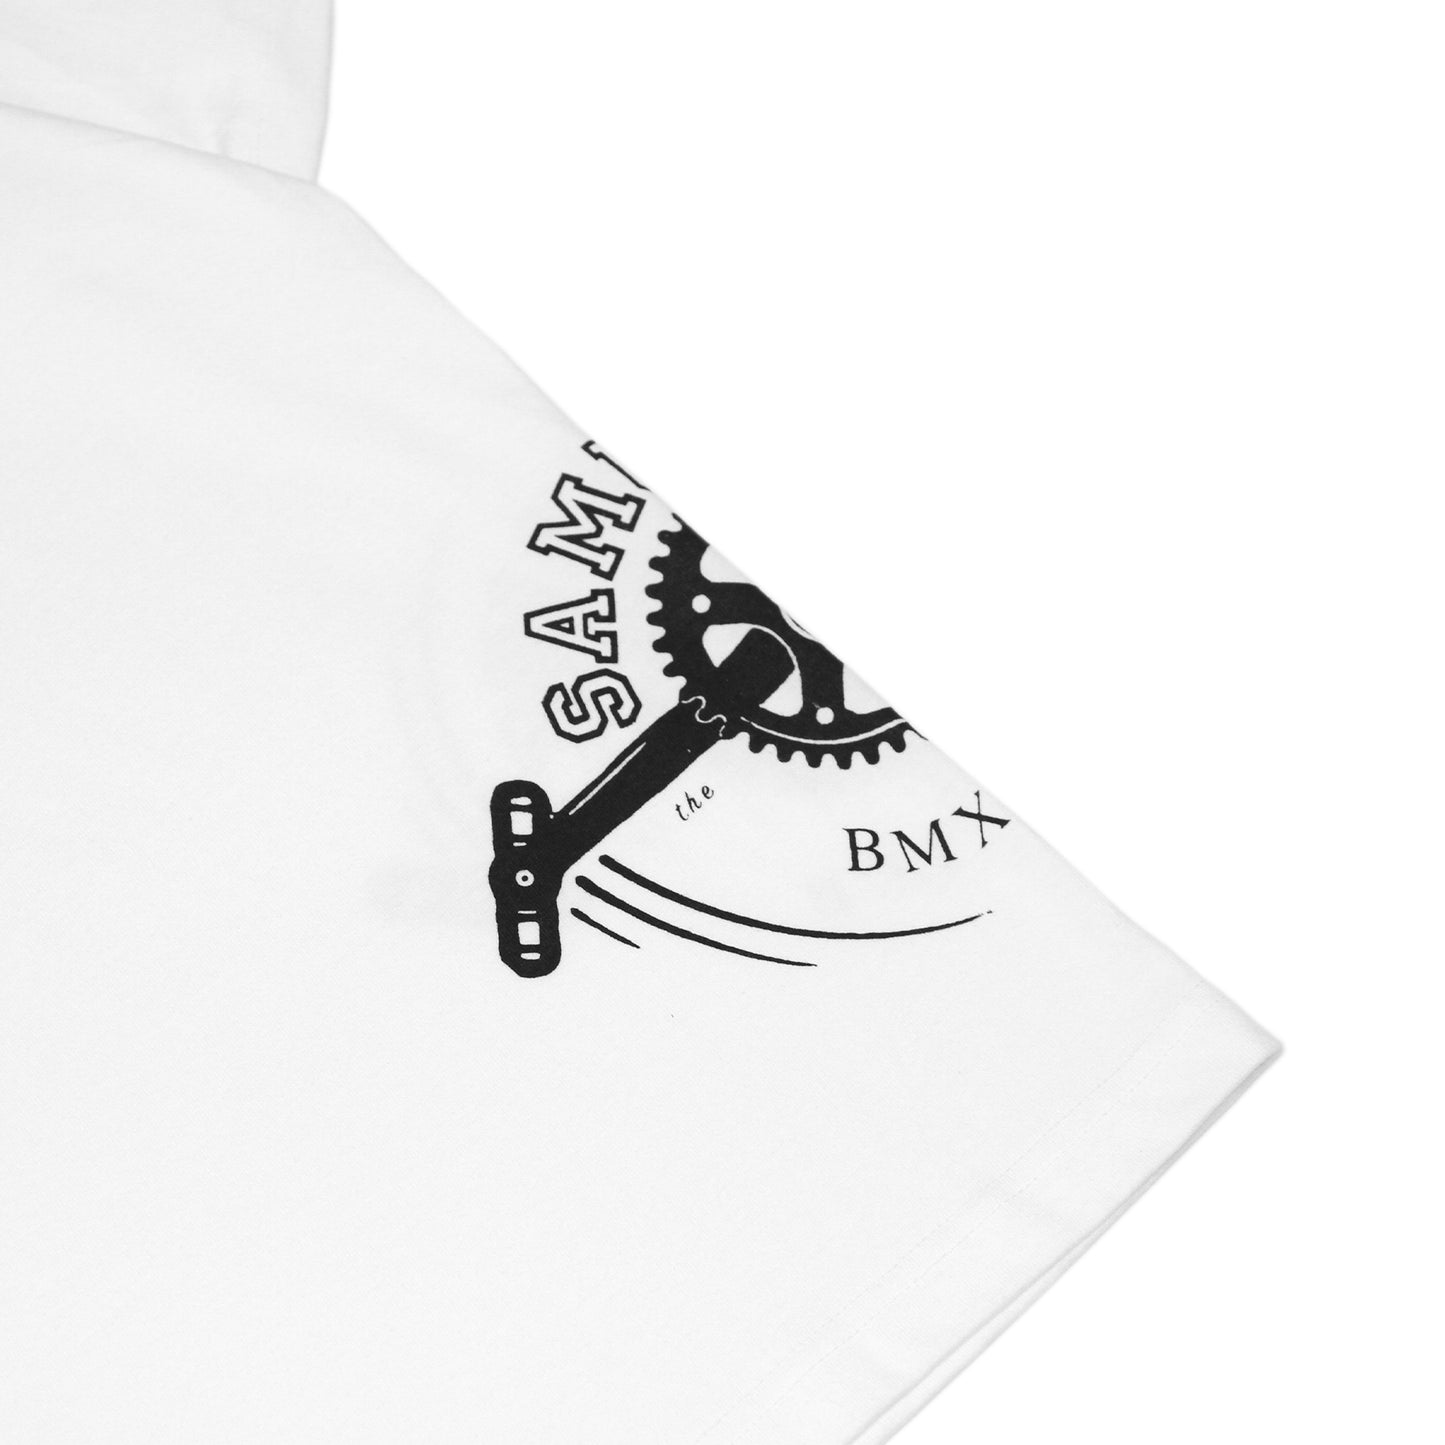 SAMURIDE - SMRD Side T-Shirt/Black & White